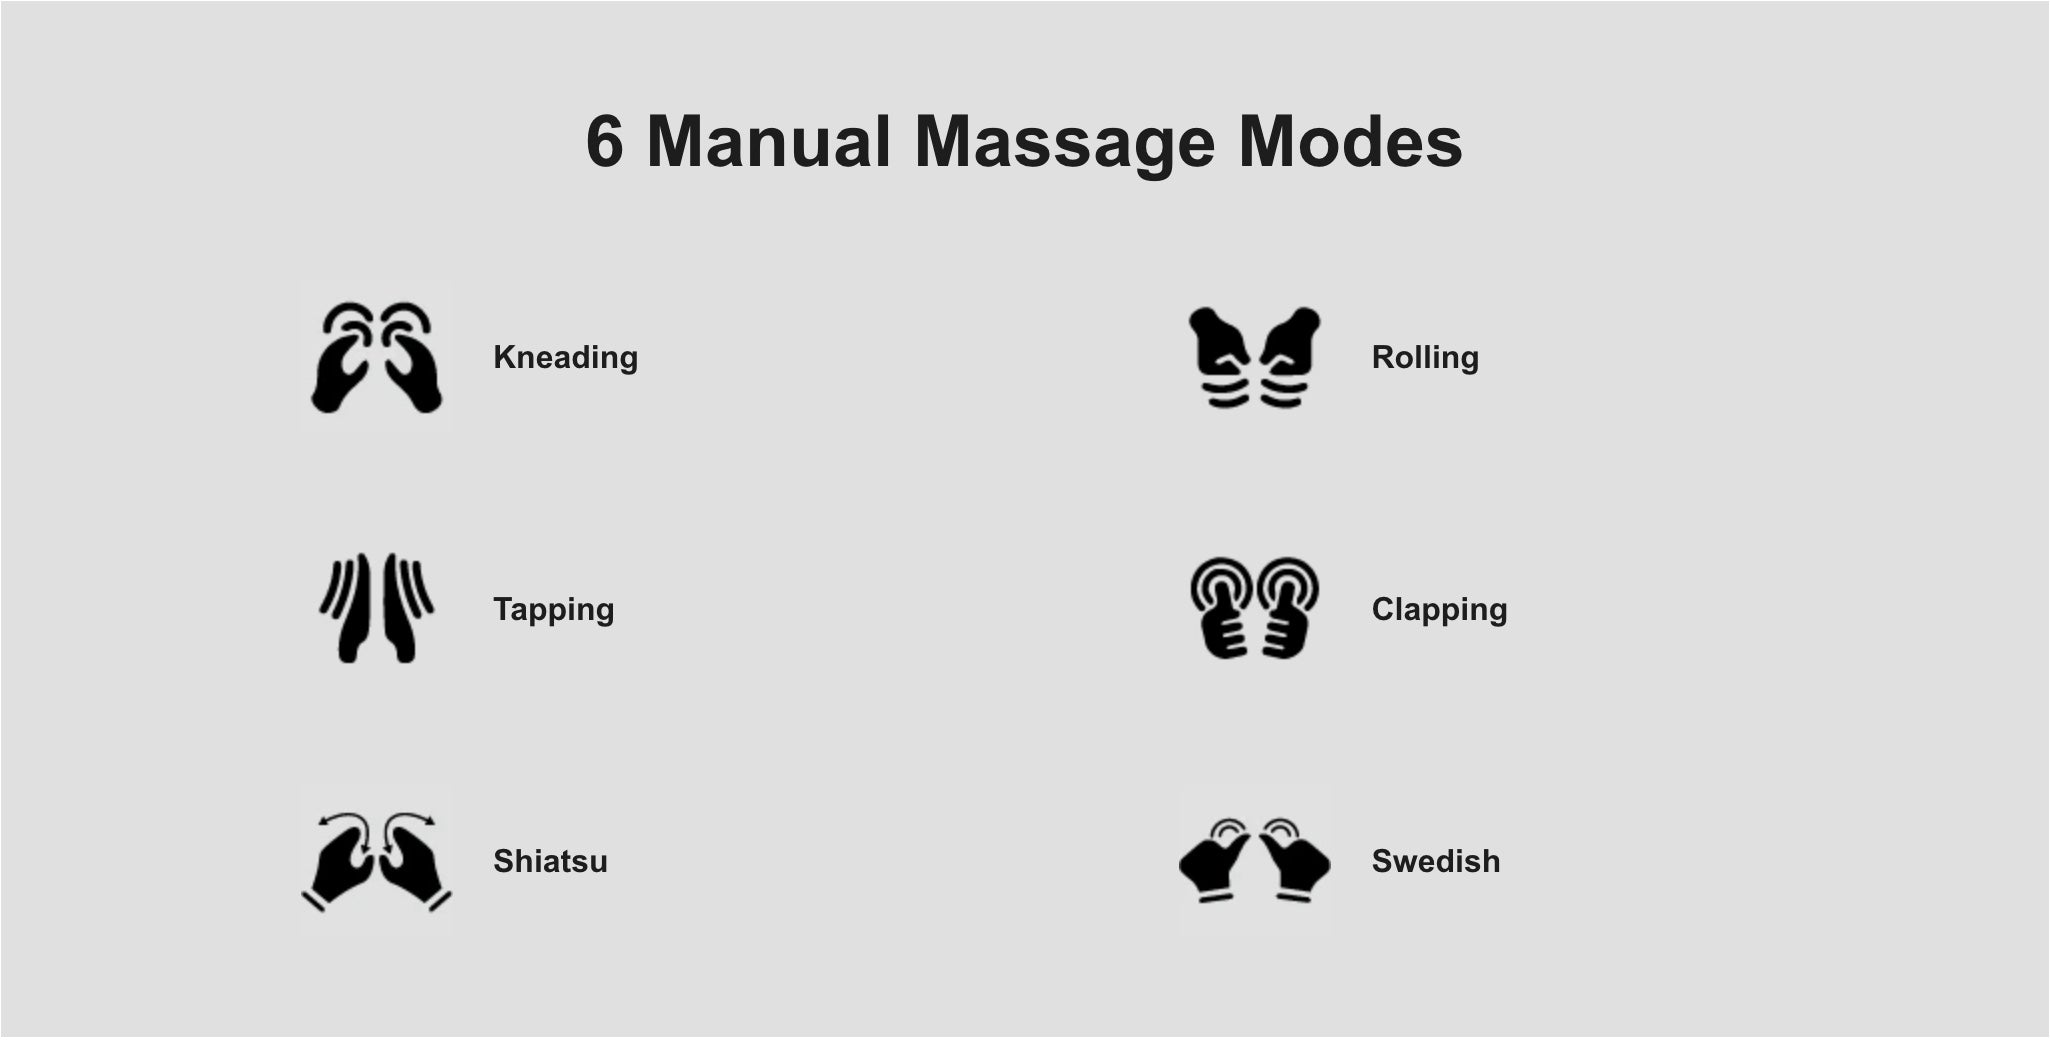 6 Manual Massage Modes